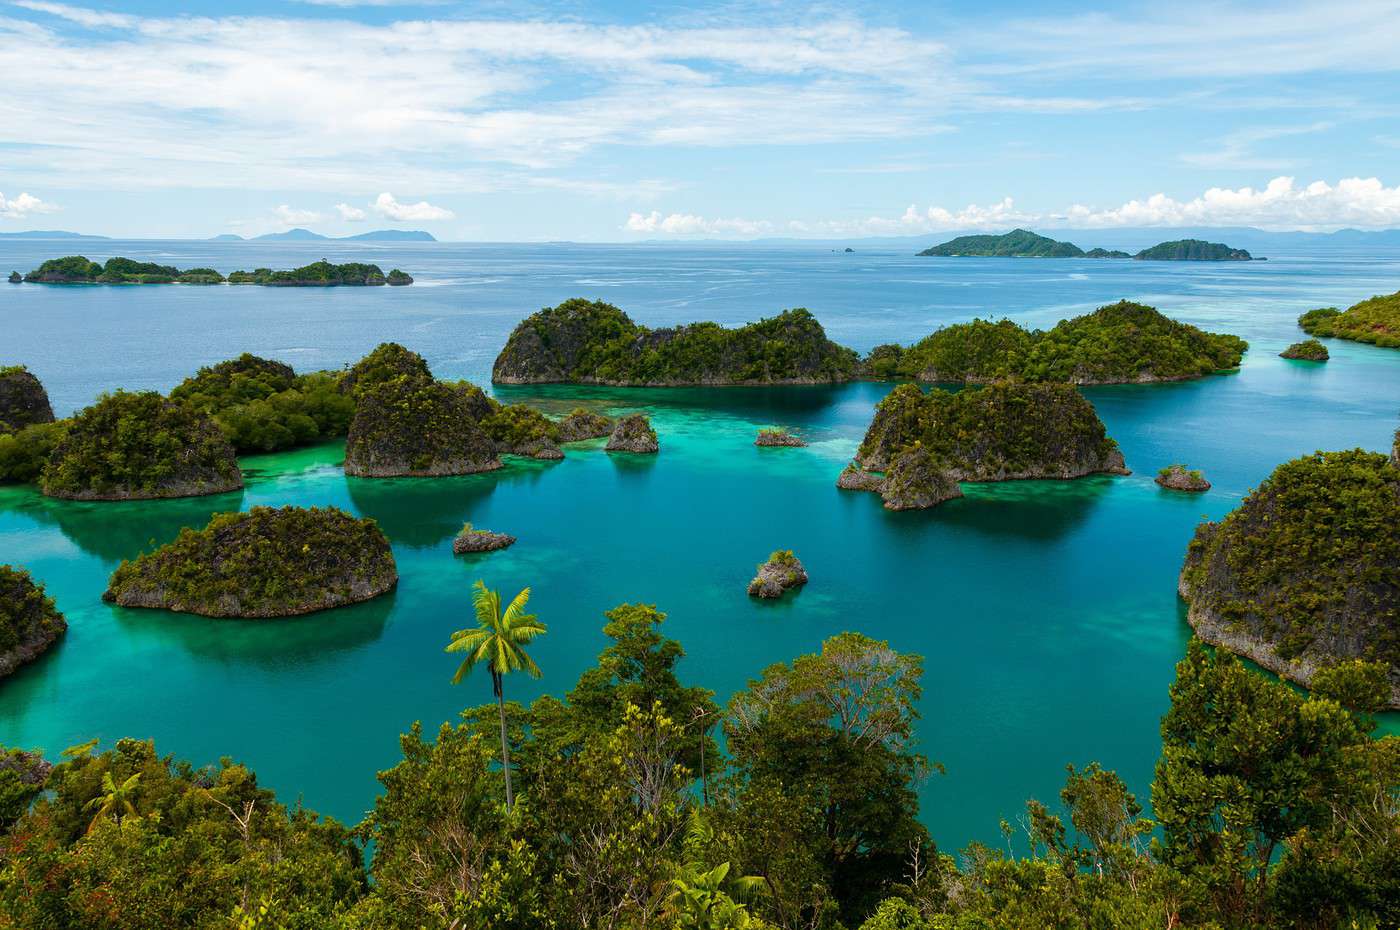  Raja  Ampat  archipel de l Indon sie  Guide voyage